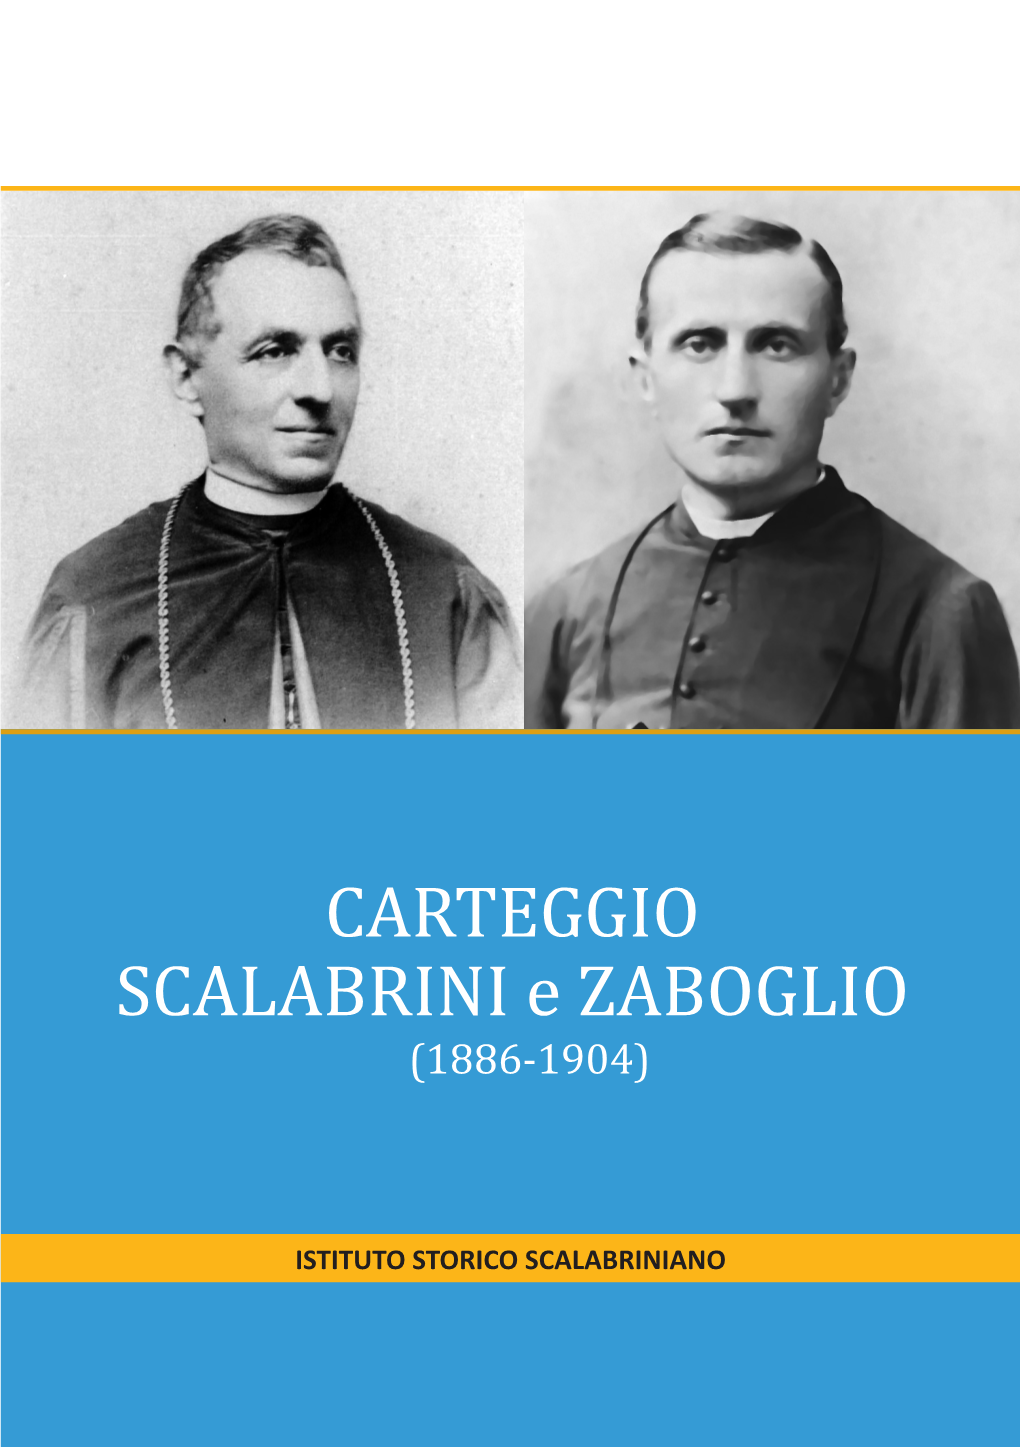 CARTEGGIO SCALABRINI E ZABOGLIO (1886-1904)